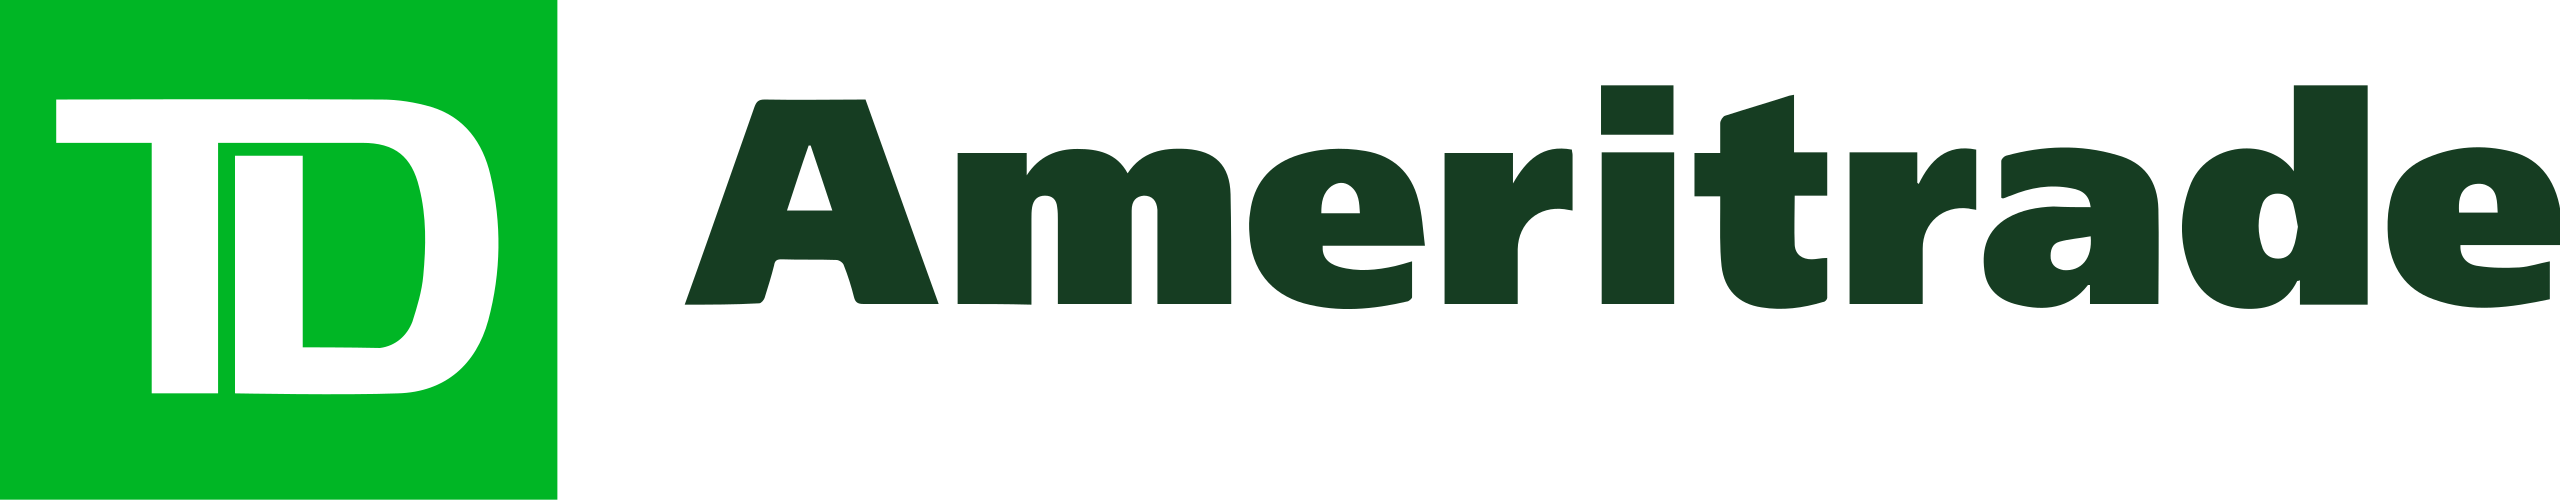 TD Ameritrade company logo.